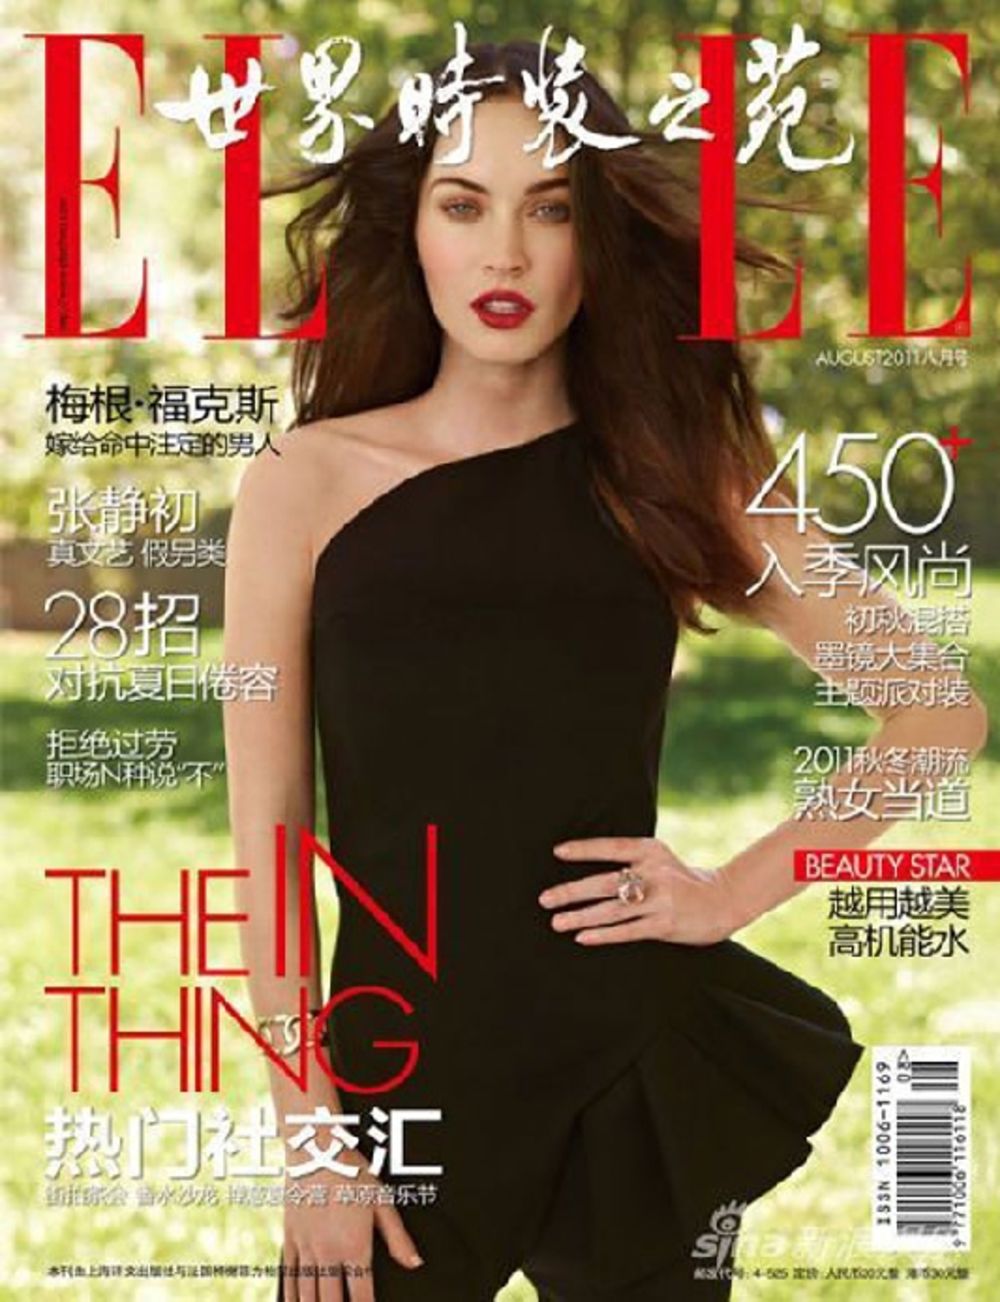 Američka glumica i manekenka Megan Fox ponovo je pokazala je svoje atribute fotografišući se za naslovnicu kineskog magazina Elle. Dvadesetpetogodišnja brineta očigledno ne dozvoljava da je previše dotiče to što više nije deo ekipe Transformers franšize, već s